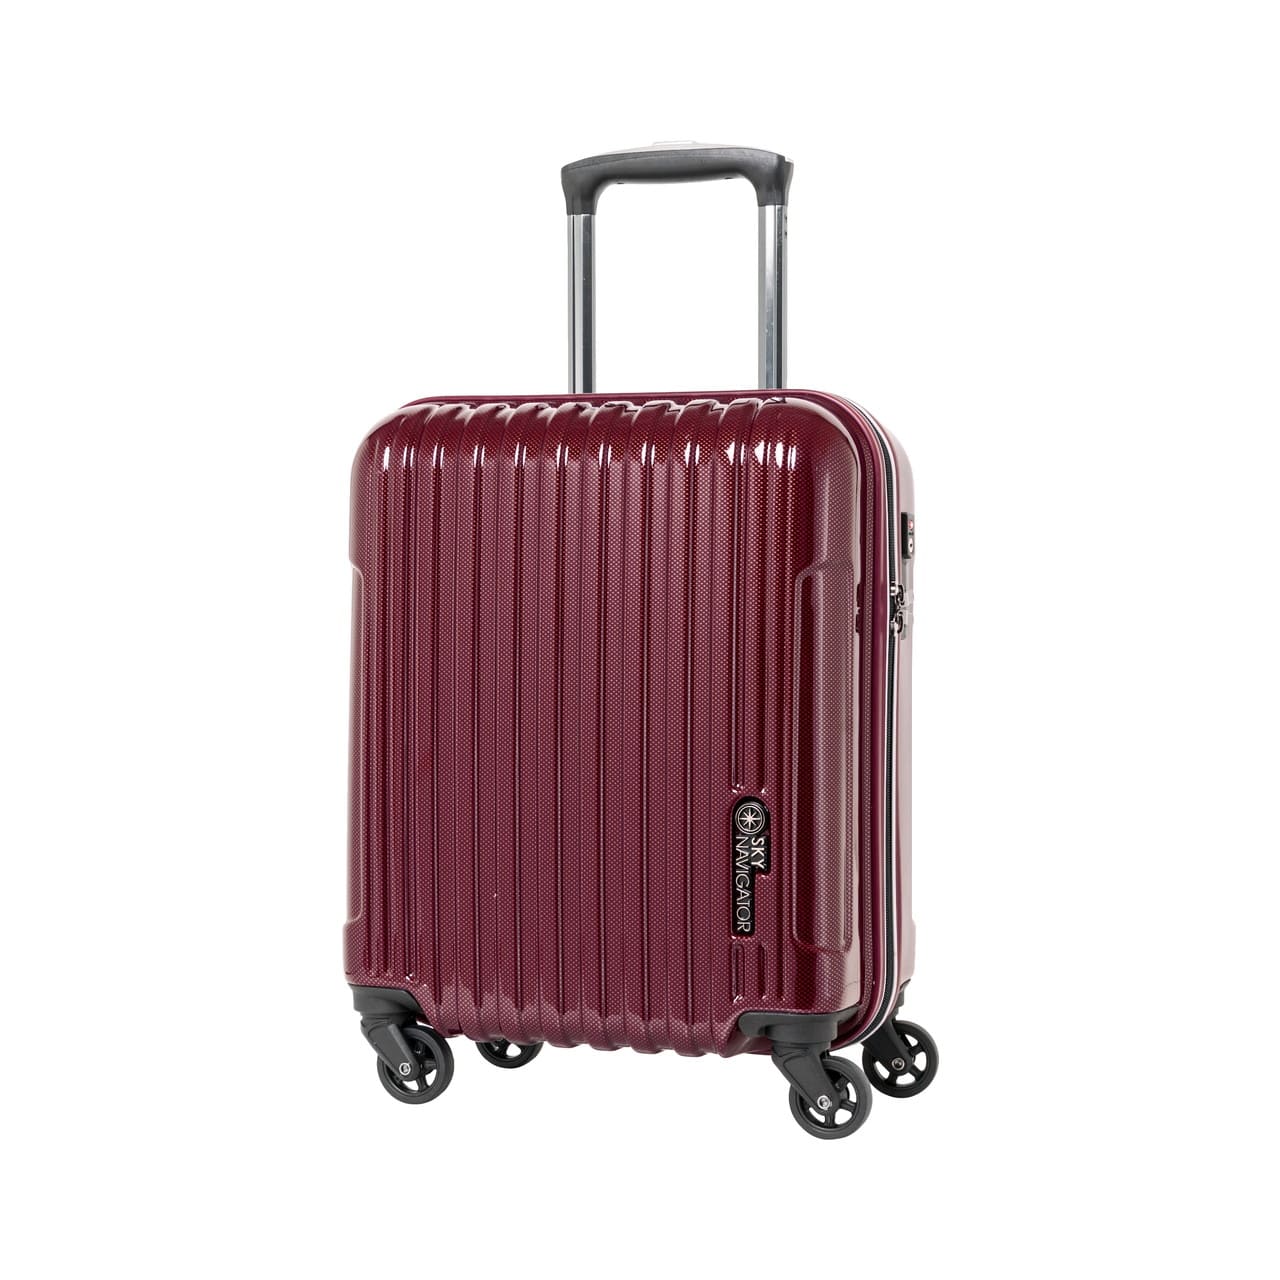 SKYNAVIGATORのスーツケースSK-0722-41のワインカーボンの正面振り画像